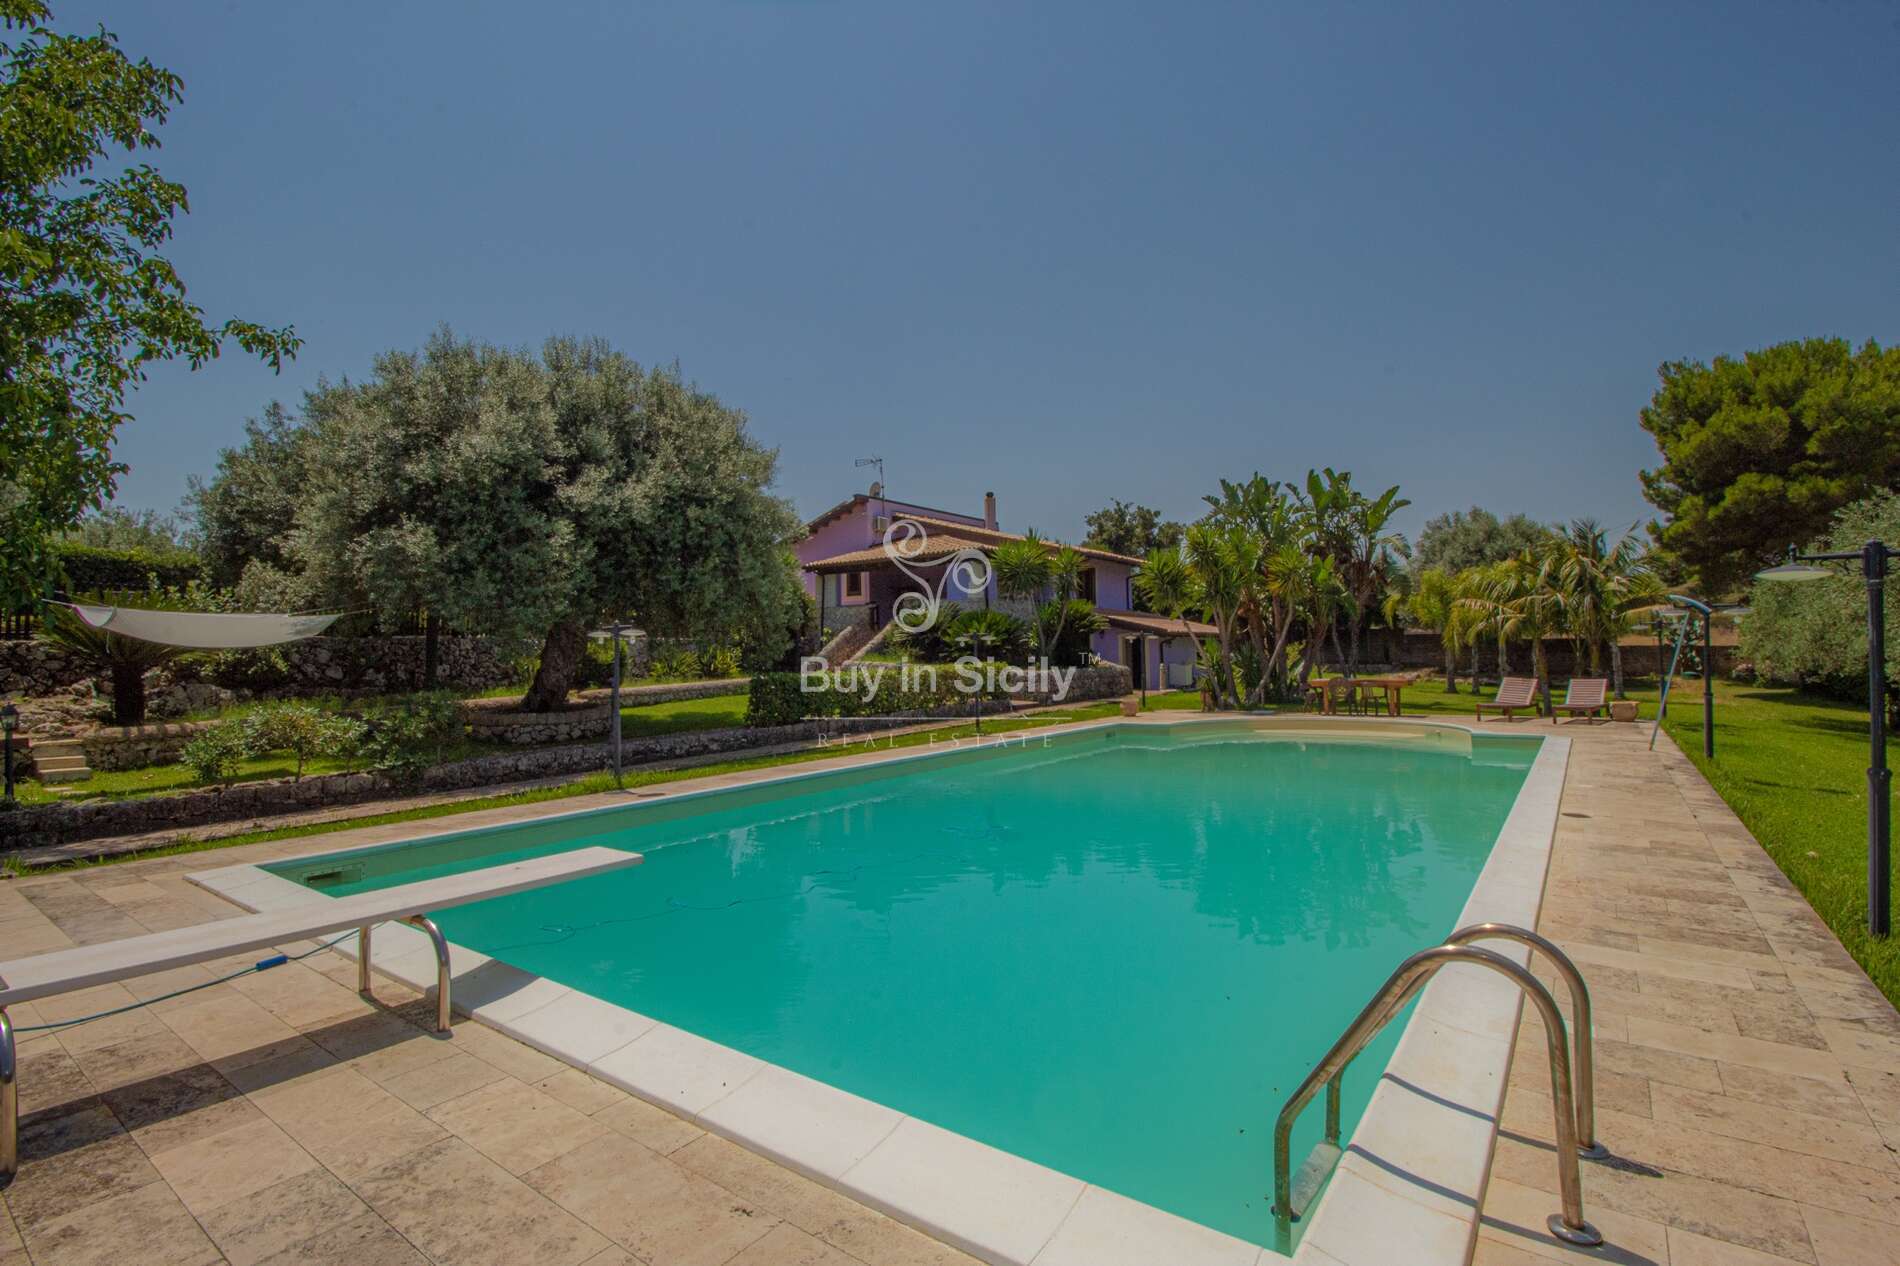 Elegante villa con piscina, immersa nel verde, sita a Solarino (SR).